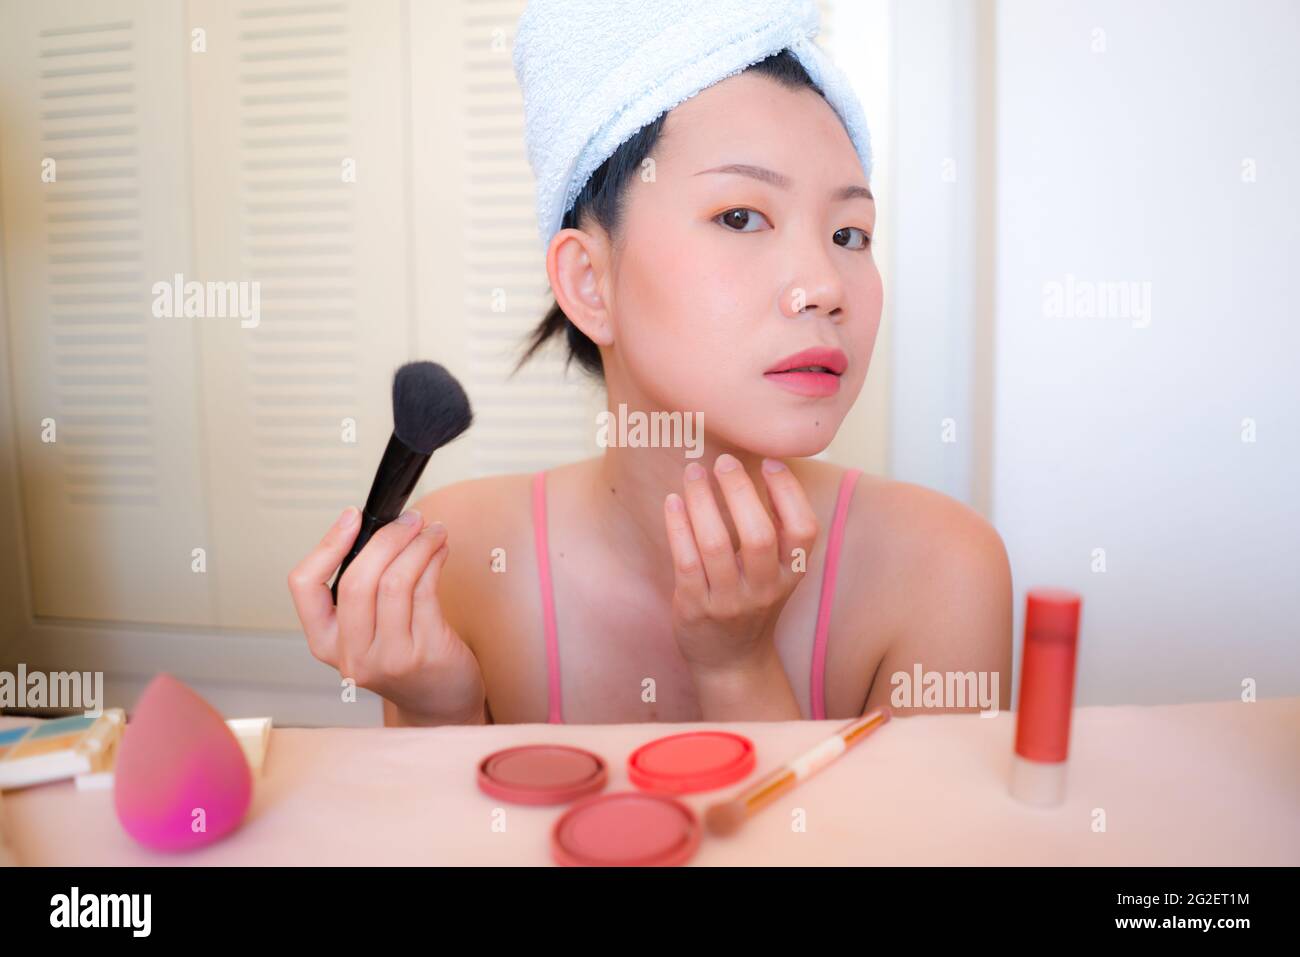 Asiatische Frau und Make-up - junge glückliche und schöne japanische  Mädchen mit Handtuch Kopf Wrap mit Pinsel Blick auf Bad Spiegel in  Schönheit und Mode konz Stockfotografie - Alamy